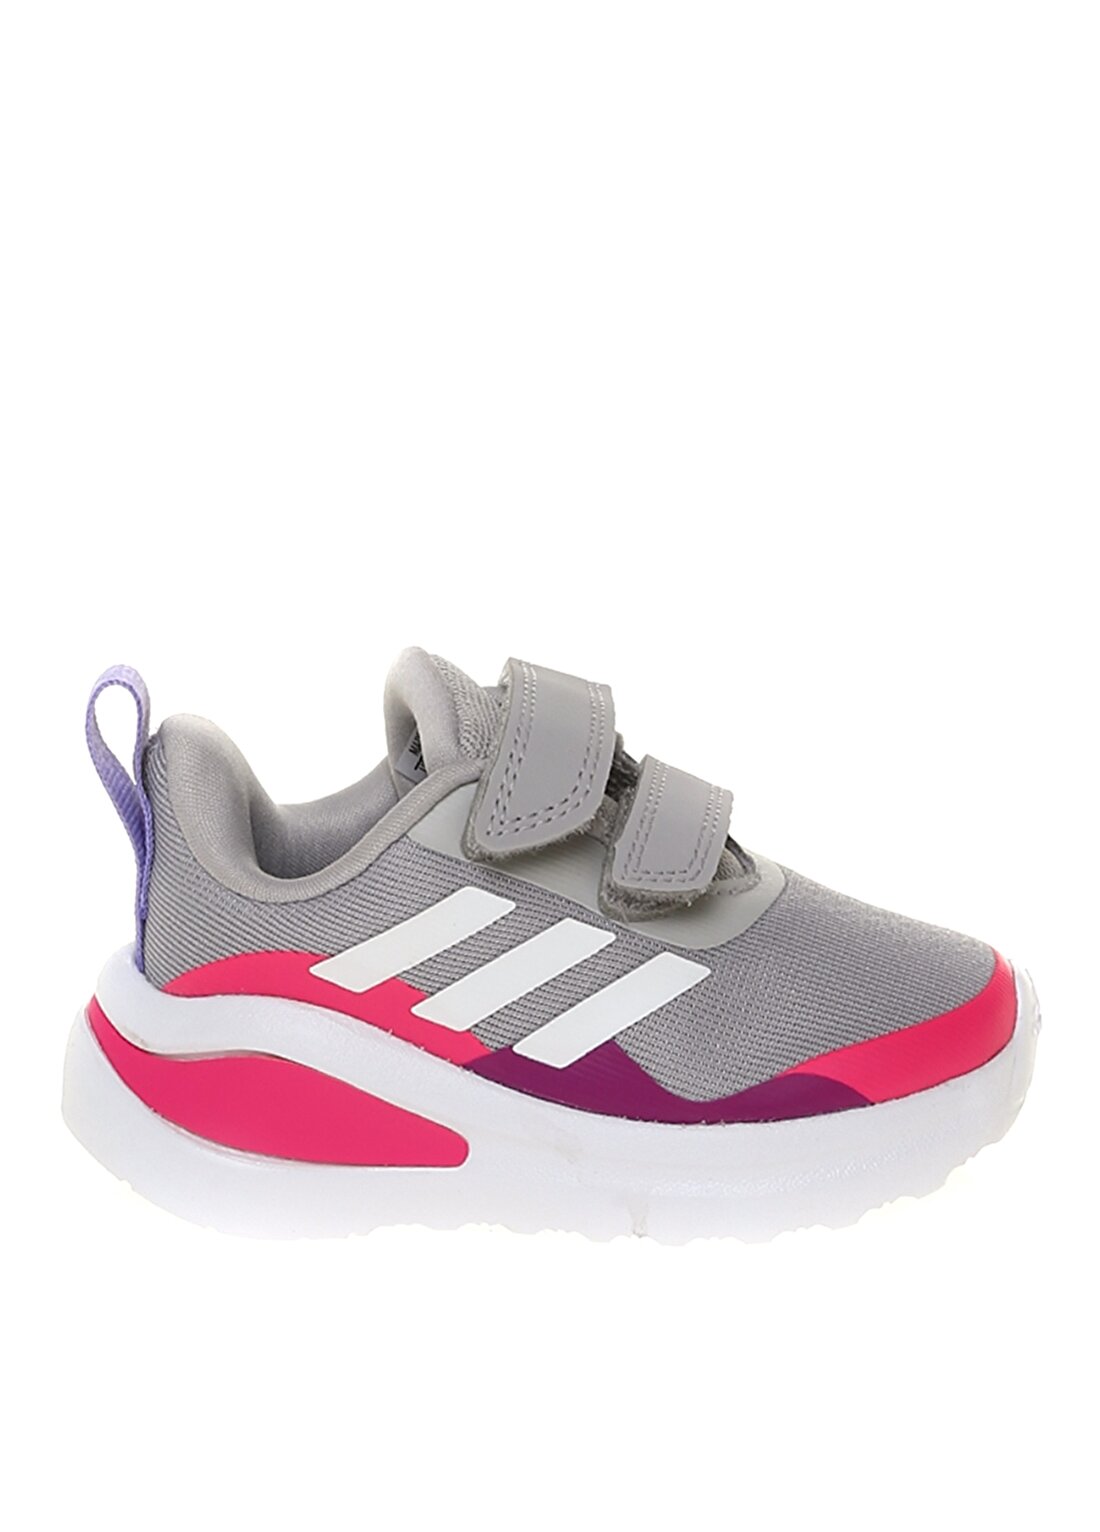 Adidas Fortarun Cf I Gri - Beyaz - Pembe Kız Çocuk Yürüyüş Ayakkabısı